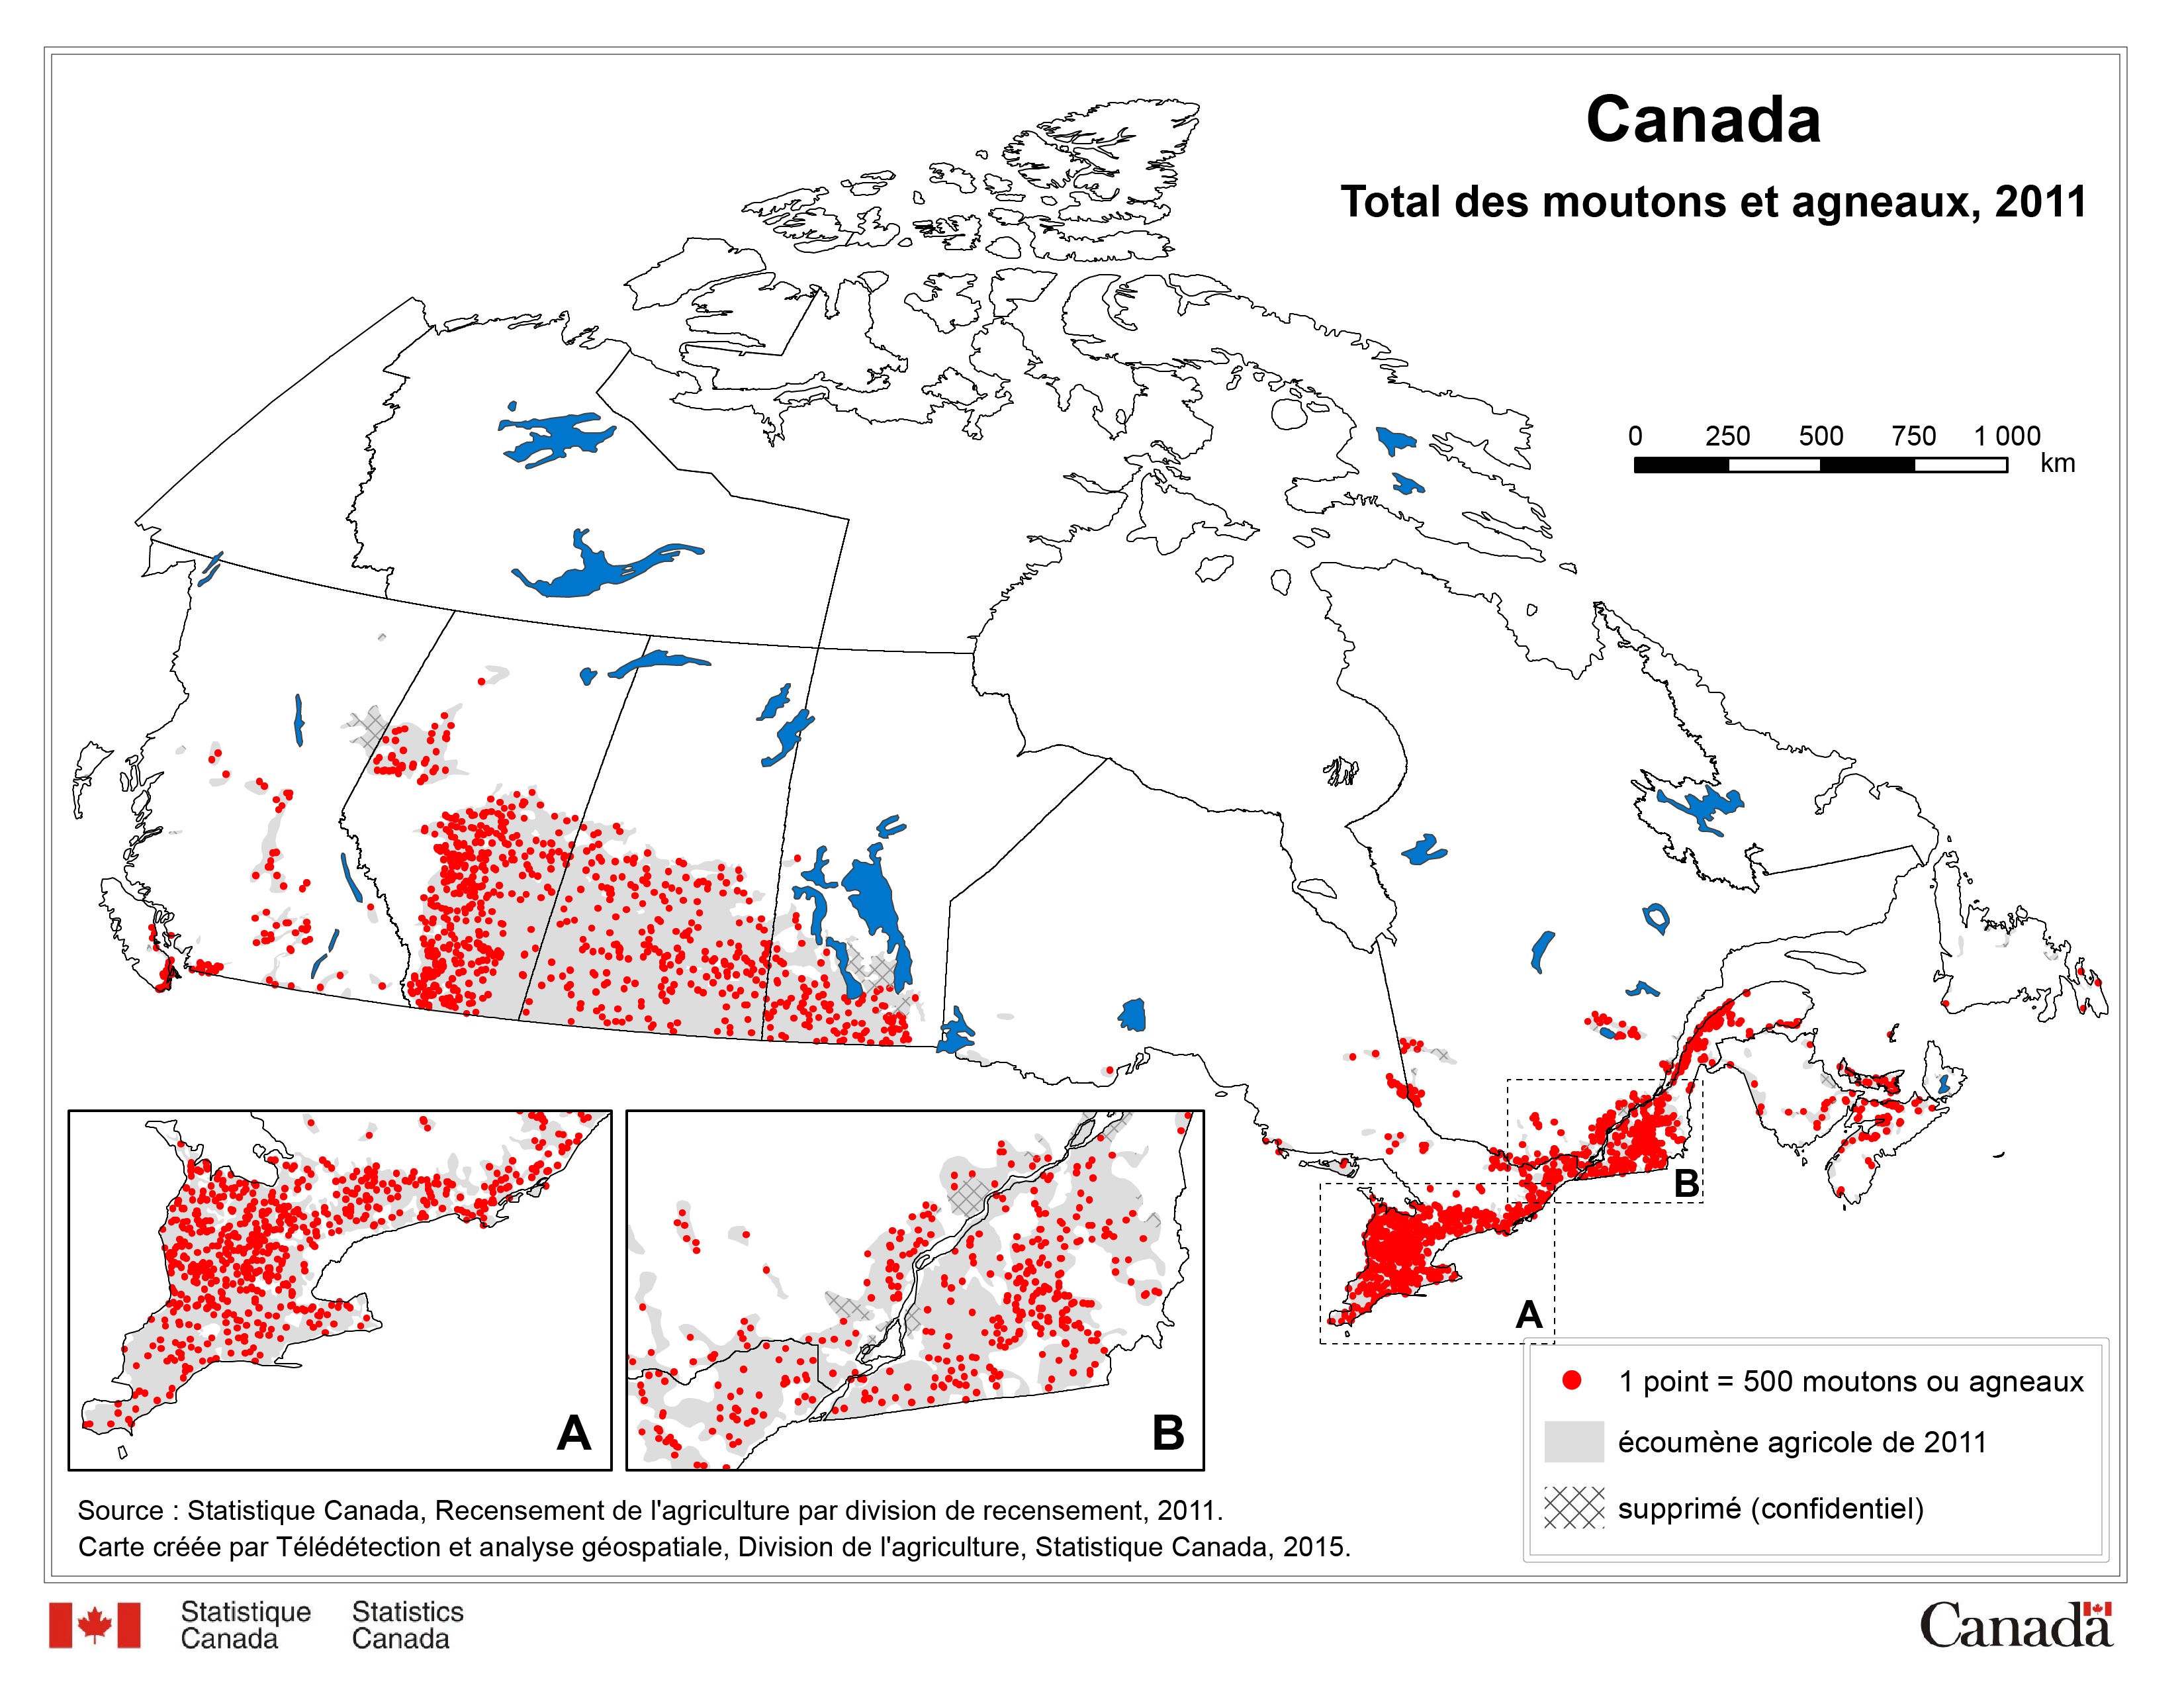 Total des moutons et agneaux au Canada, 2011